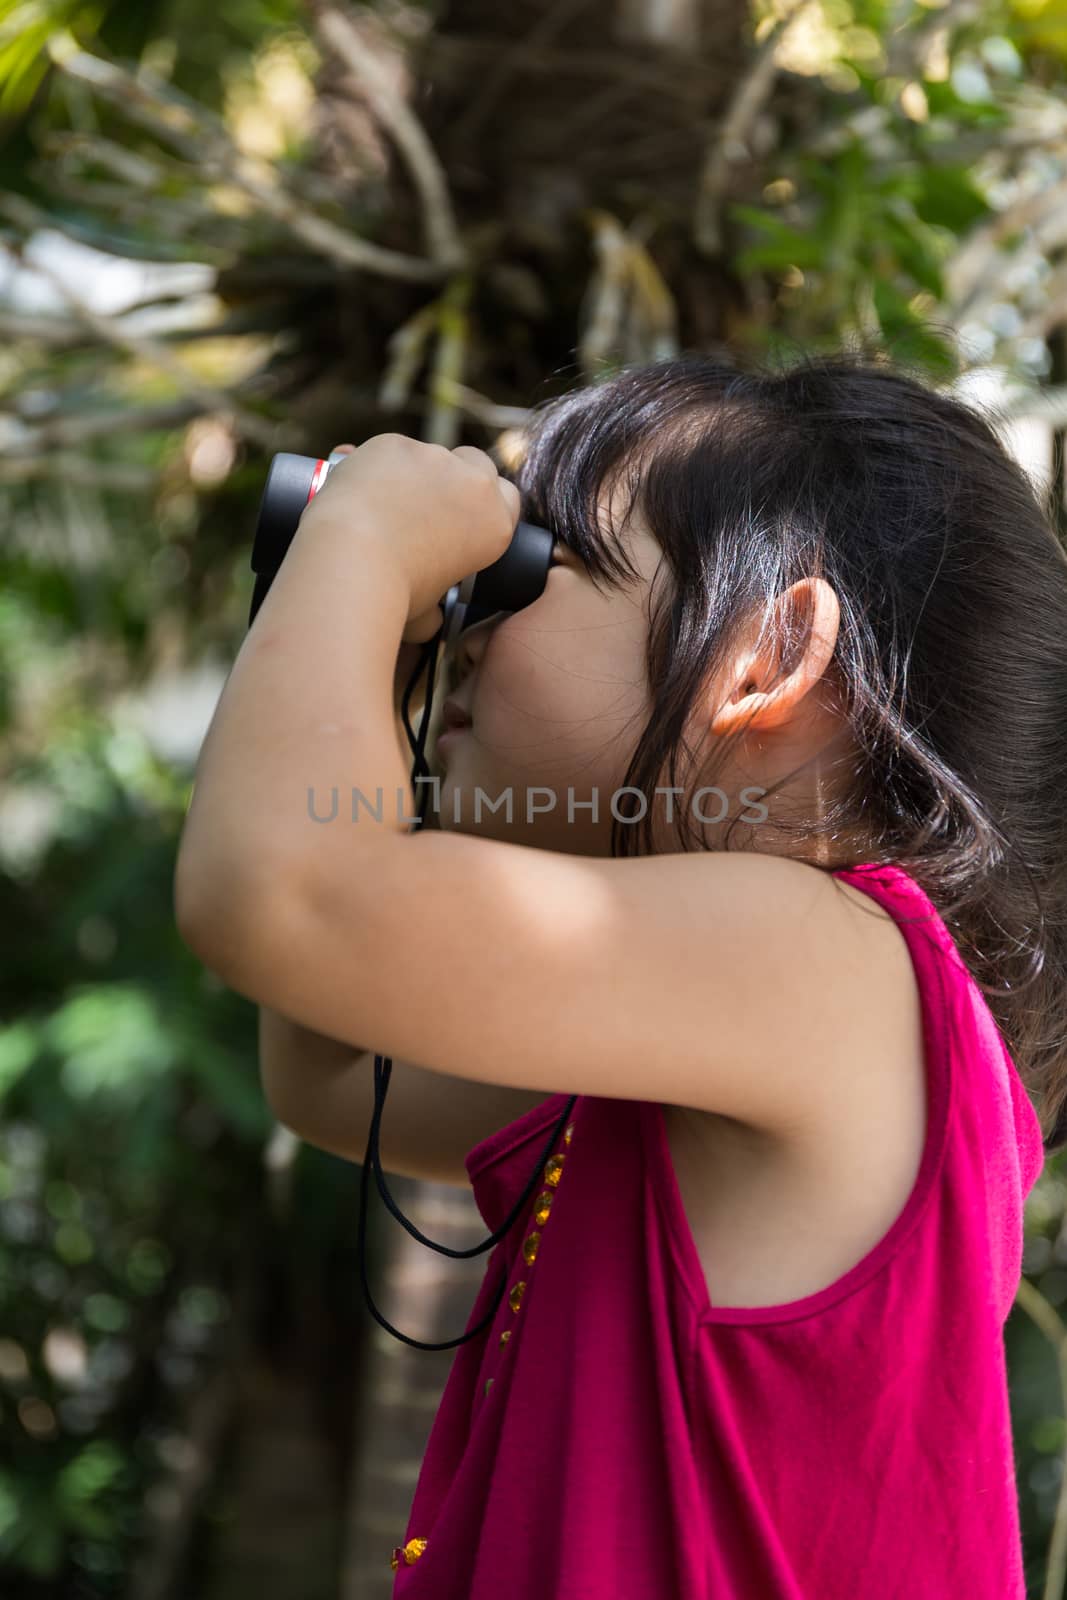 Cute girl is looking through binoculars during a trip.